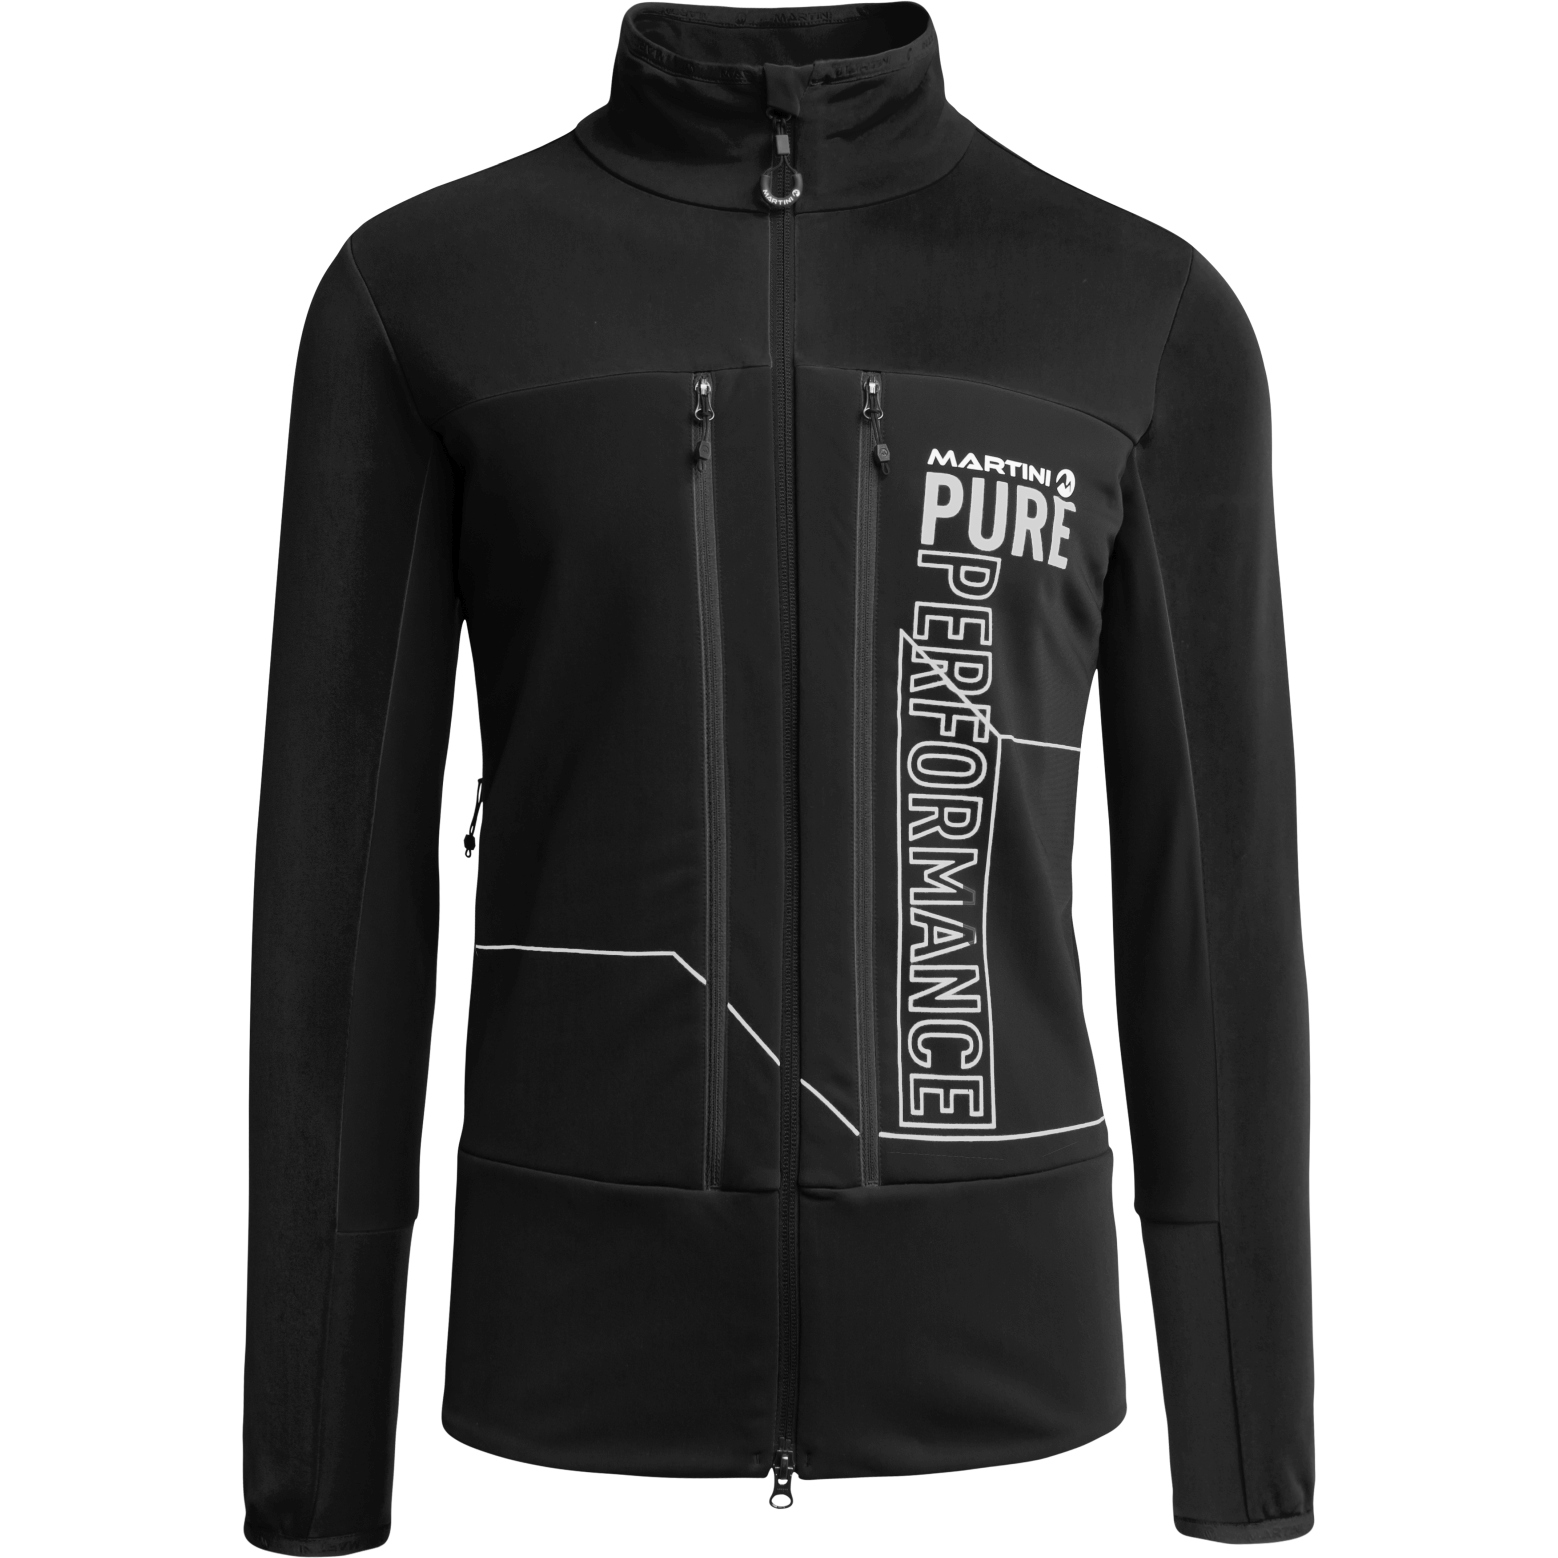 Produktbild von Martini Sportswear Annapurna Hybrid Jacke - schwarz